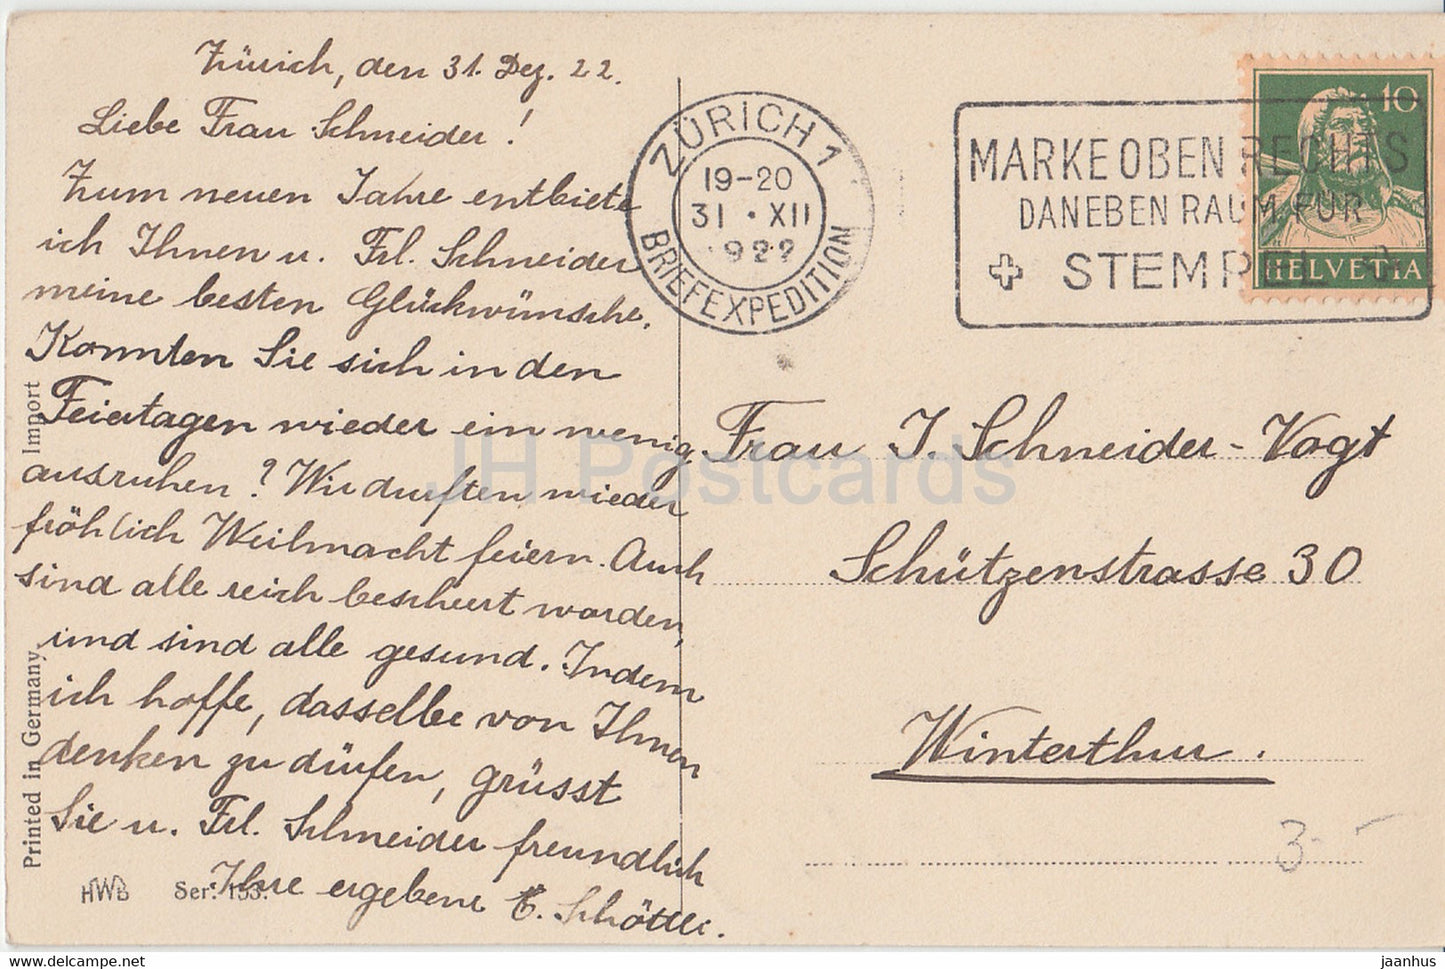 Neujahrsgrußkarte - Ein Frohes Neujahr - Winter - Hirsch - Tier - HWB SER 153 - alte Postkarte - 1922 - Deutschland - gebraucht